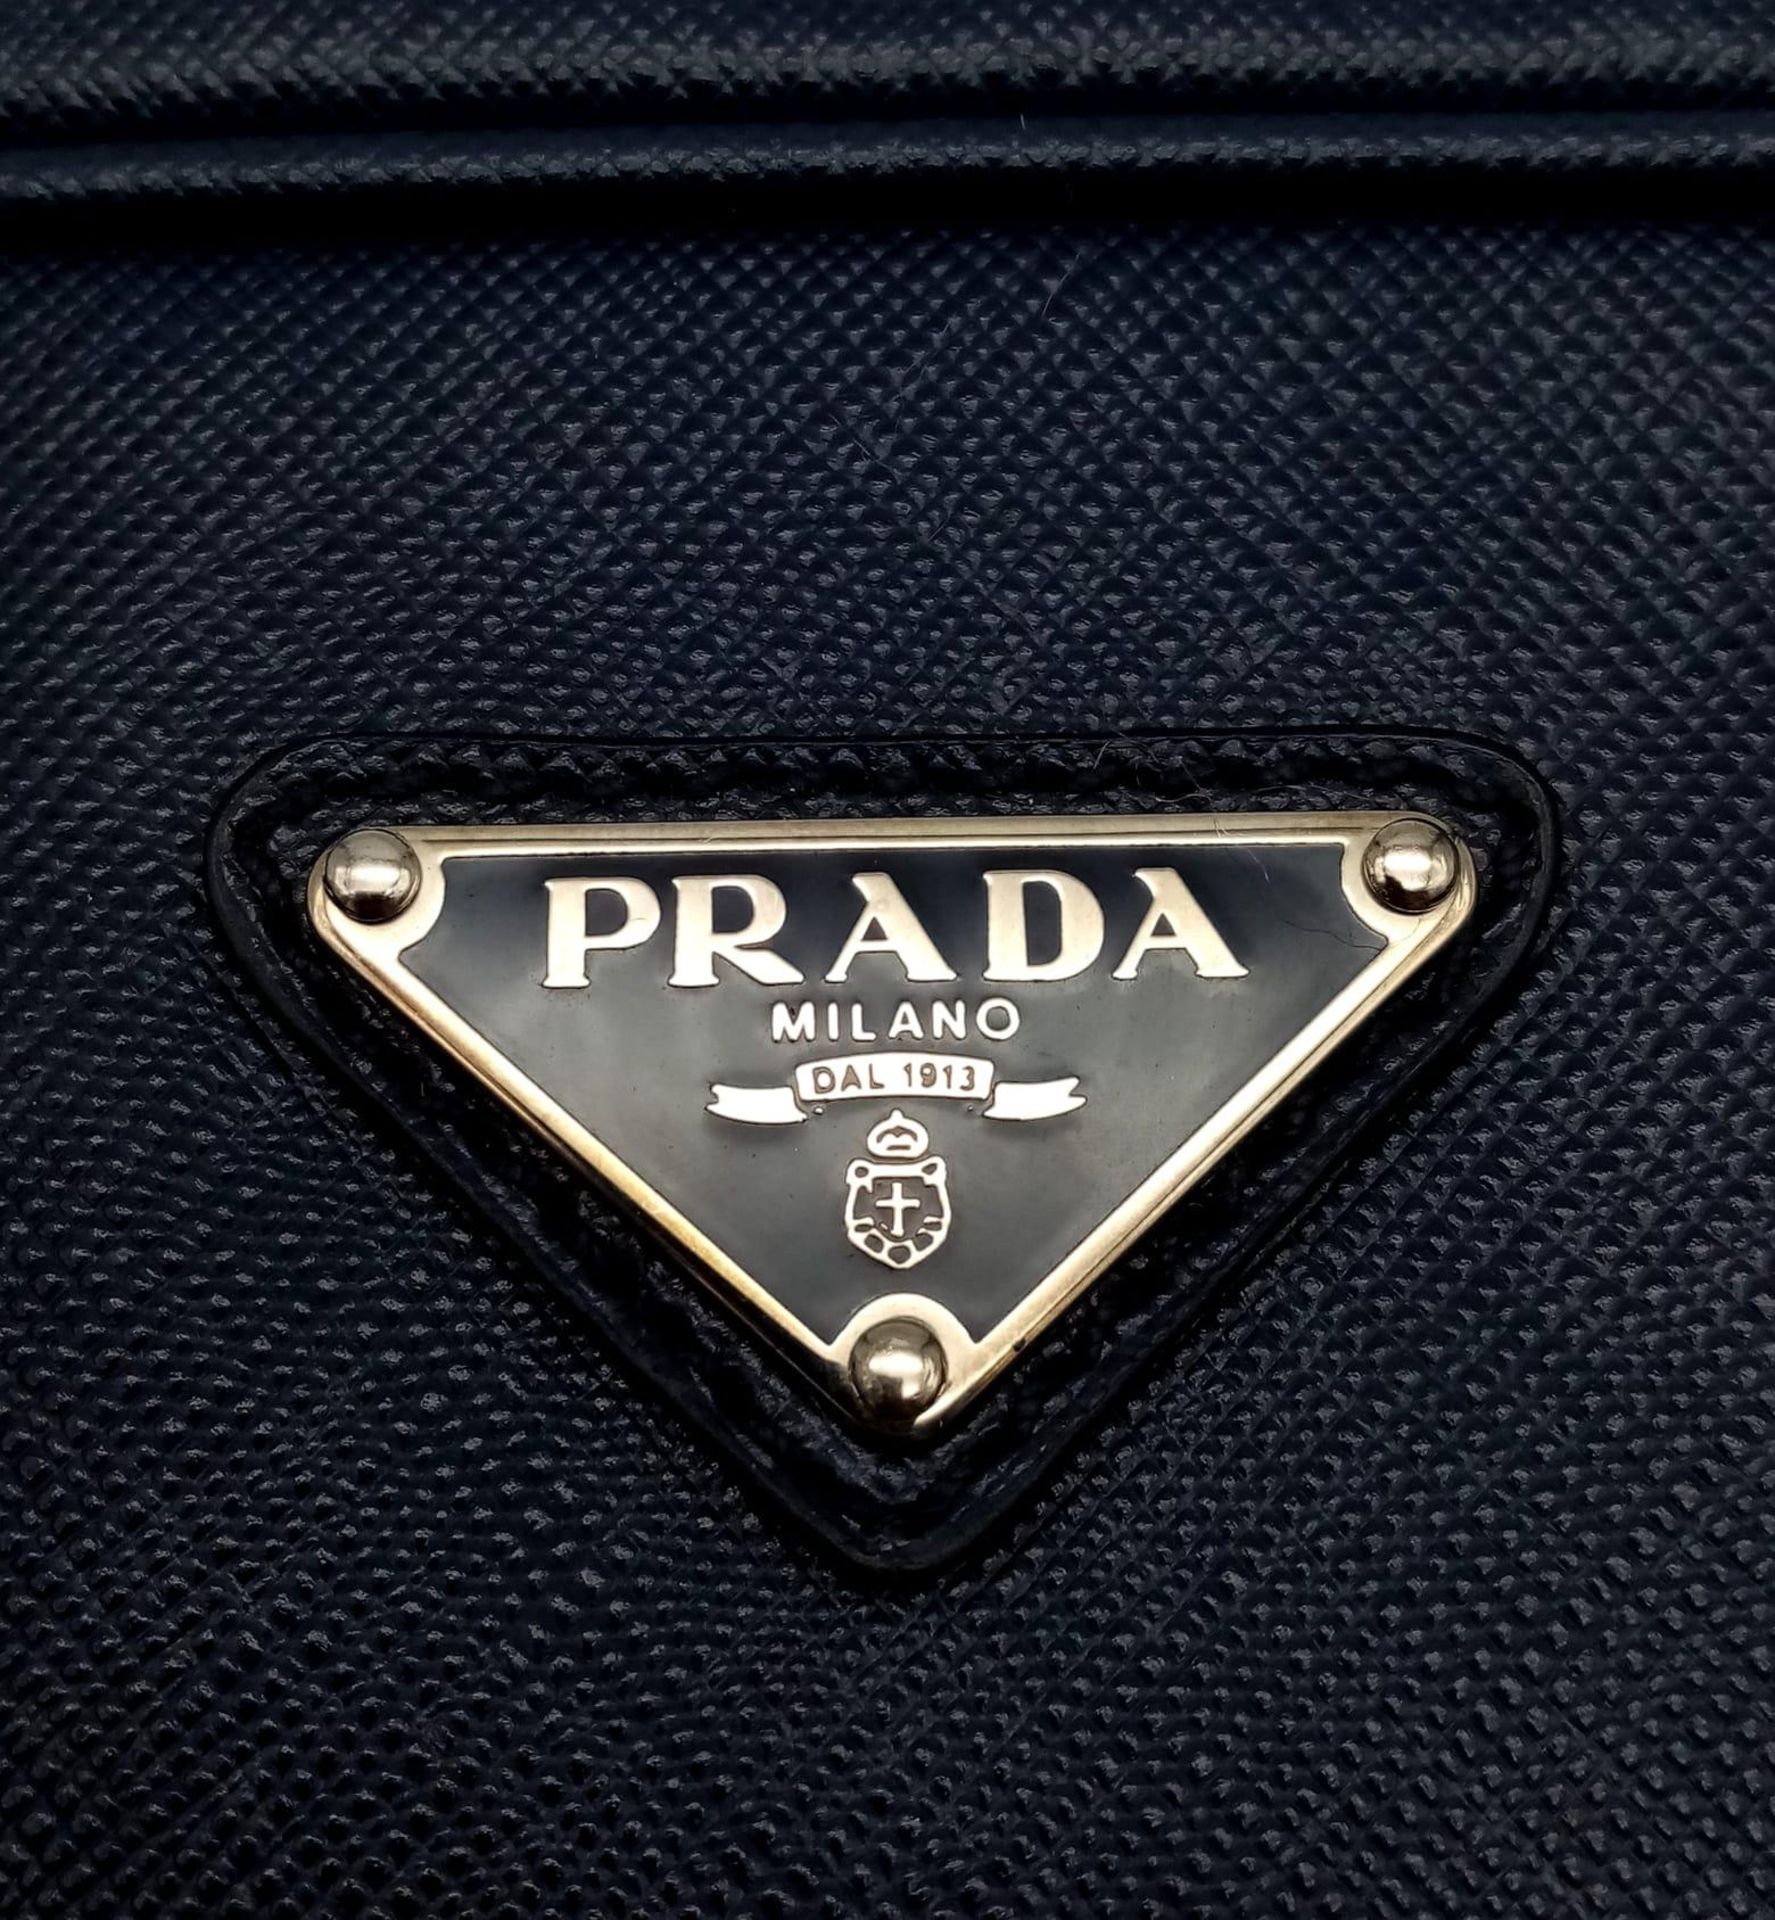 A Prada Saffiano Briefcase. Navy blue textured leather exterior. Prada logo badge. Name tag. Quality - Image 5 of 6